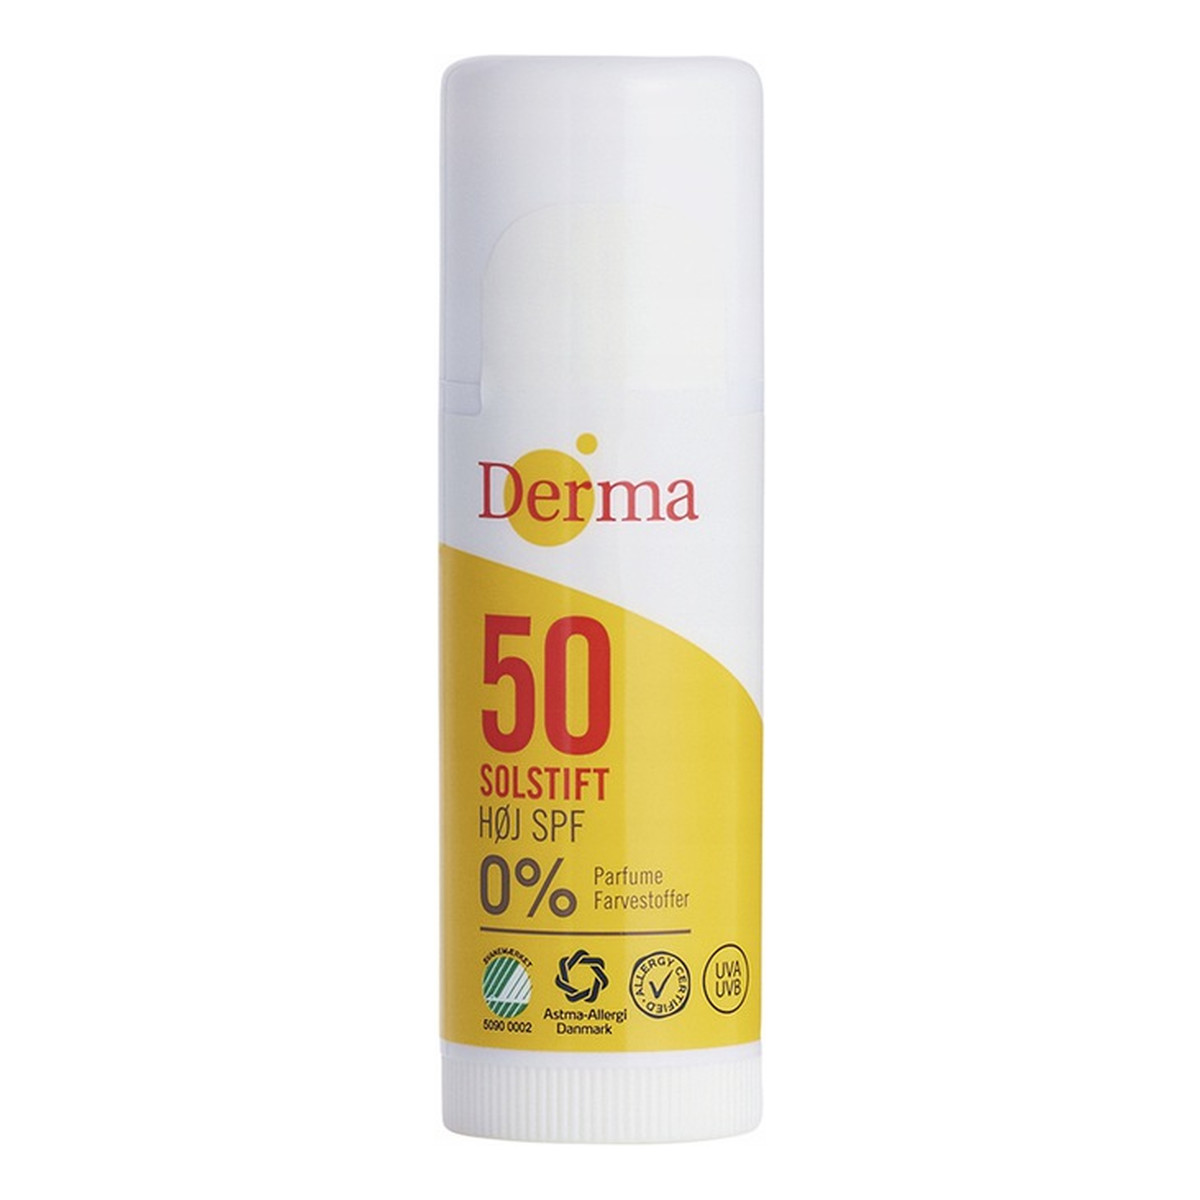 Derma Sun Solstift SPF50 olejek przeciwsłoneczny w sztyfcie 15ml